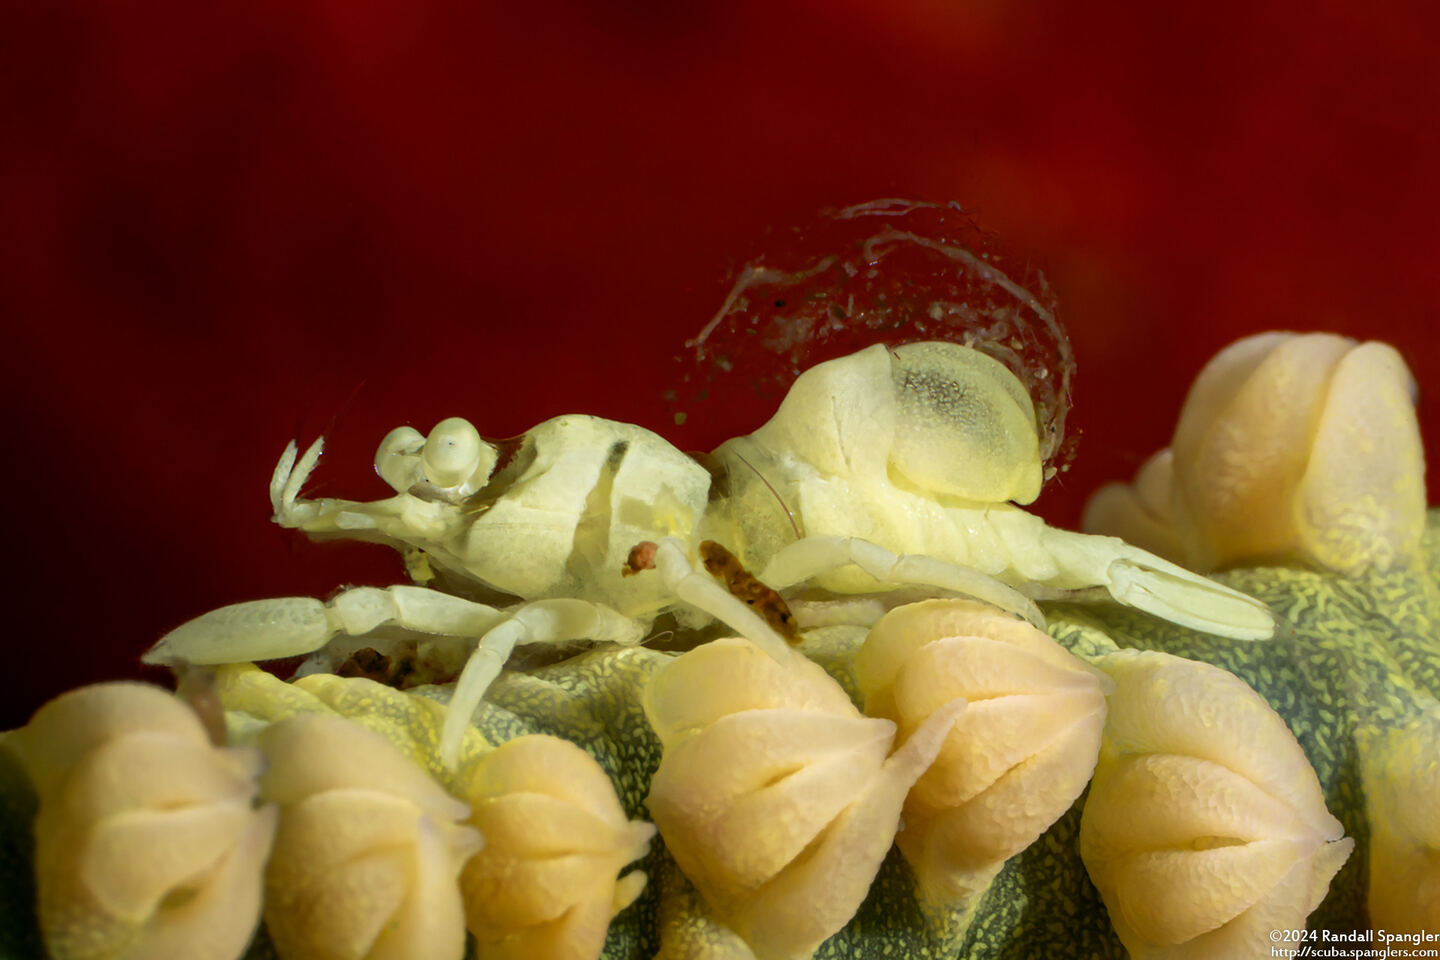 Family Bopyridae (Bopyrid Parasite); Bopyrid parasite on shrimp